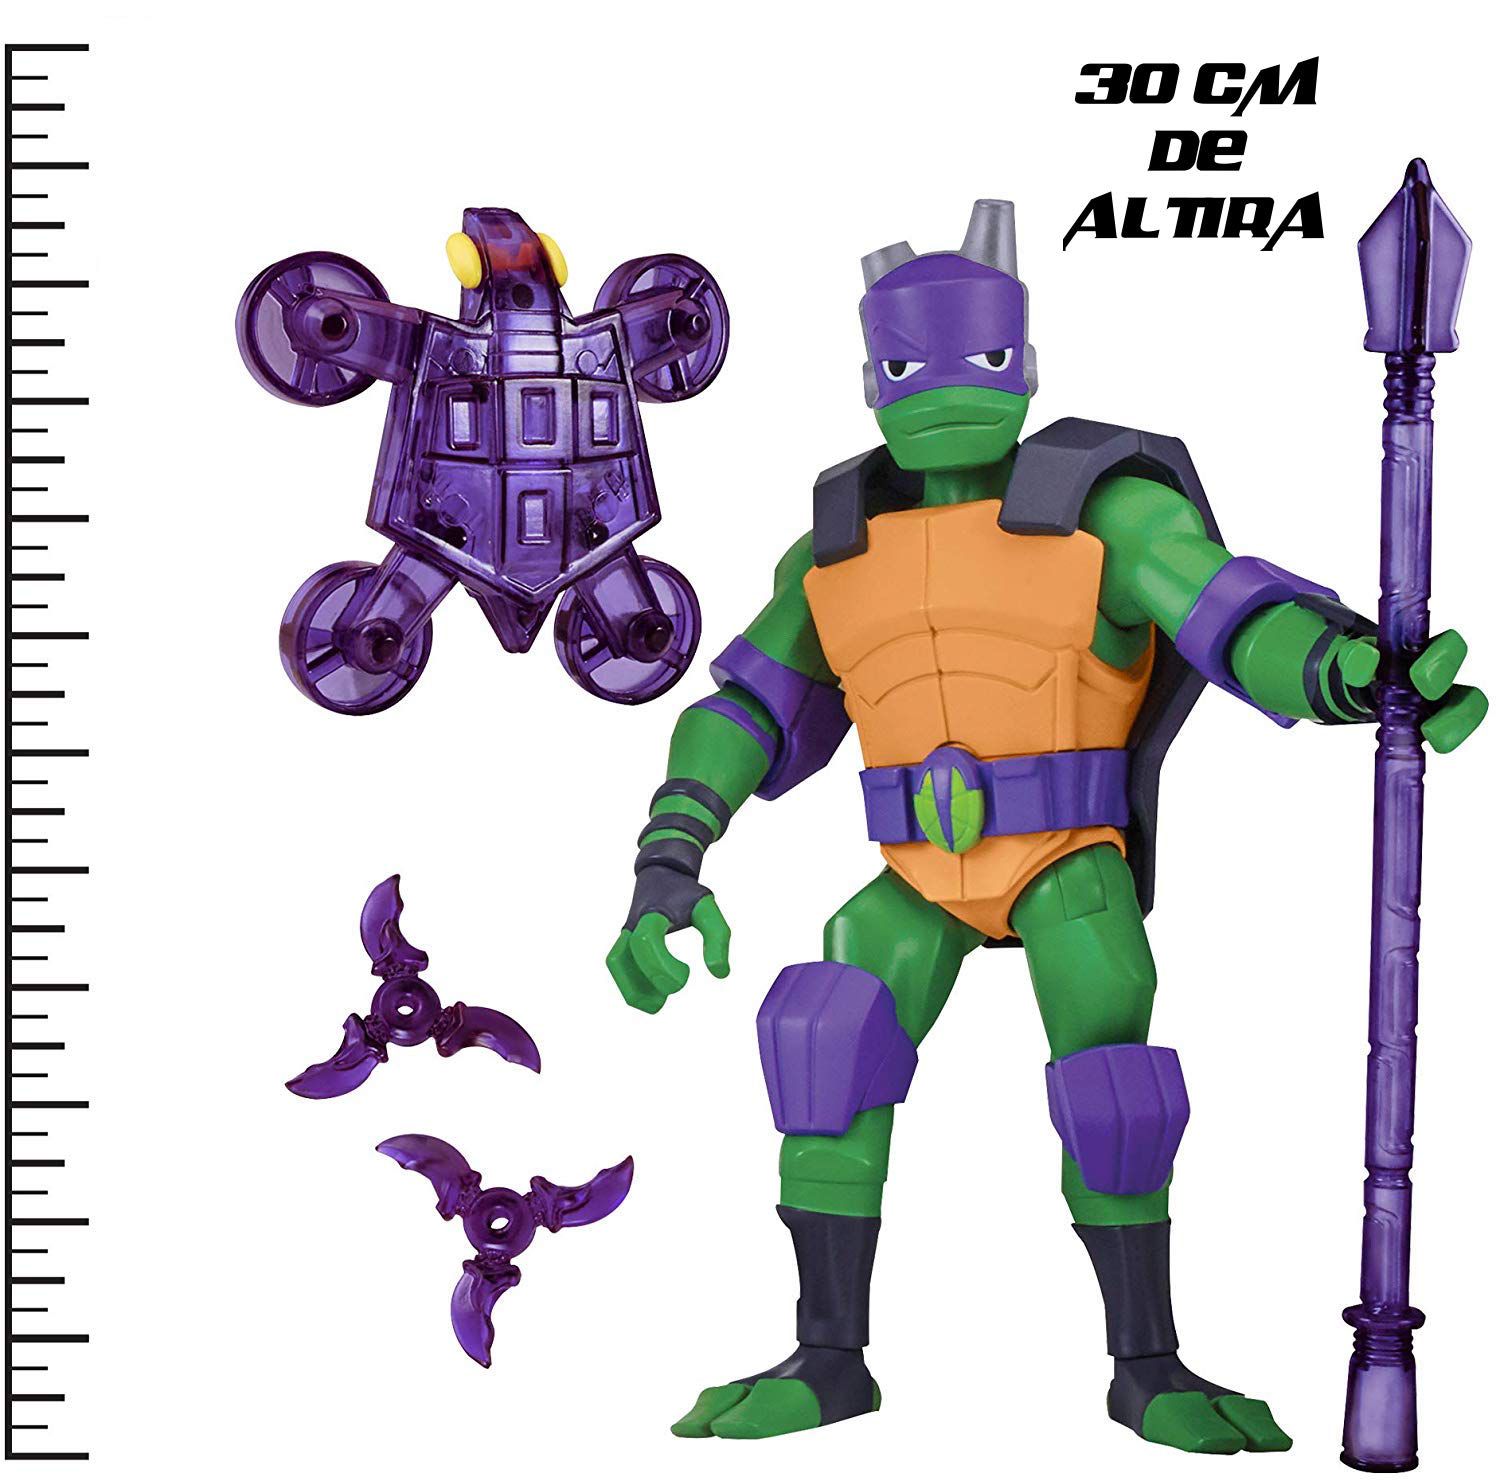 Tartarugas Ninja - Figura de Luxo Gigante - Donatello 30 cm